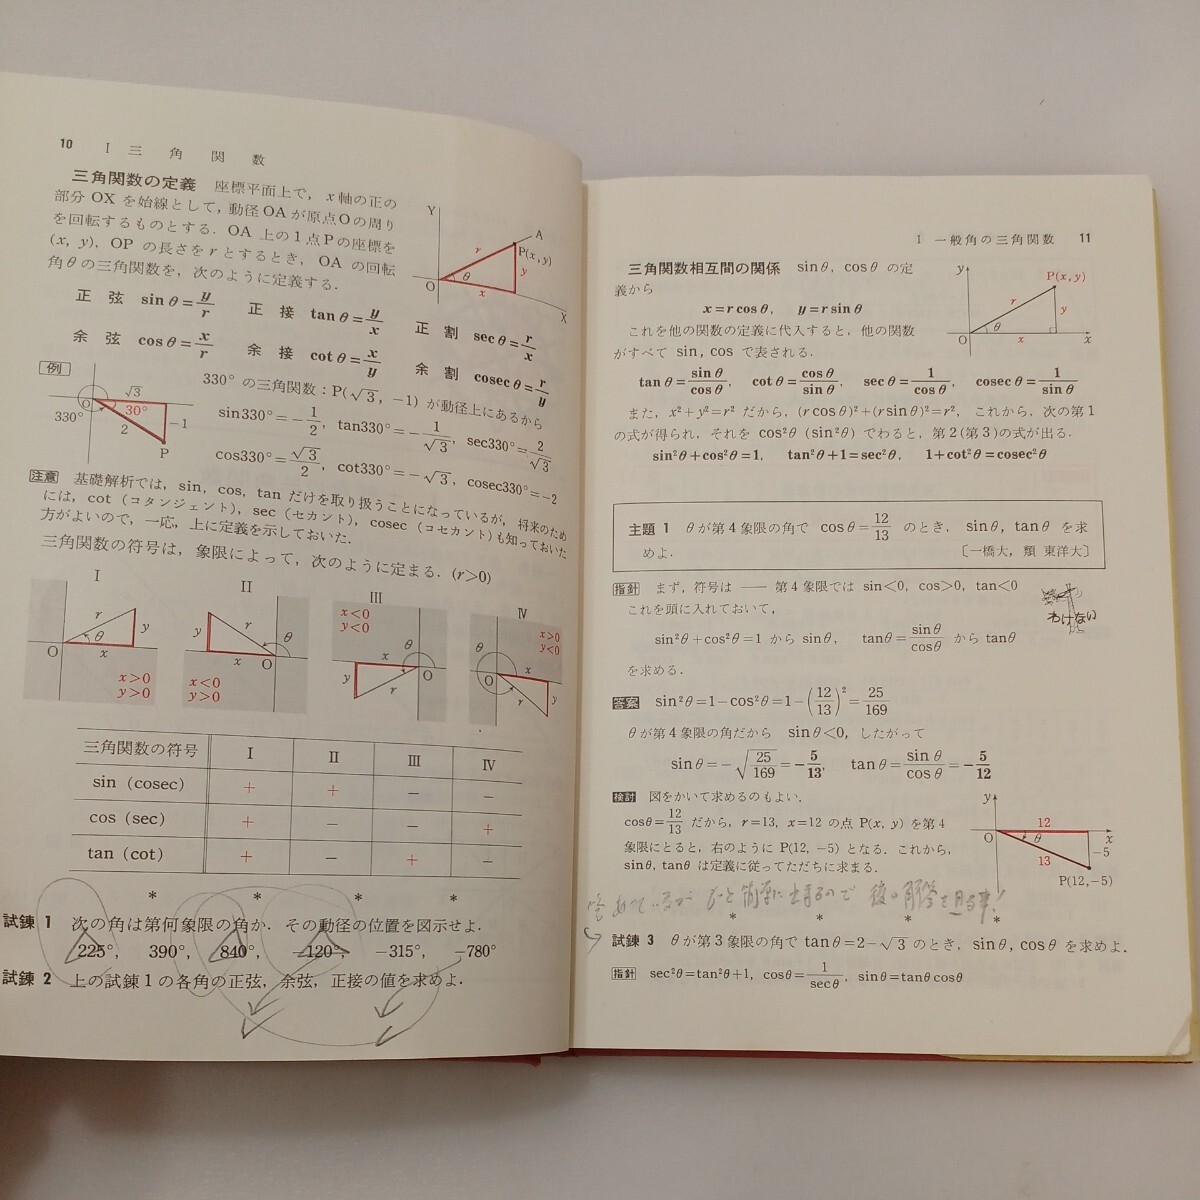 zaa-570♪チャート式 基礎解析 橋本純次(著) 数研出版 (1995/9/1) 単行本 高校数学 受験勉強 _画像4